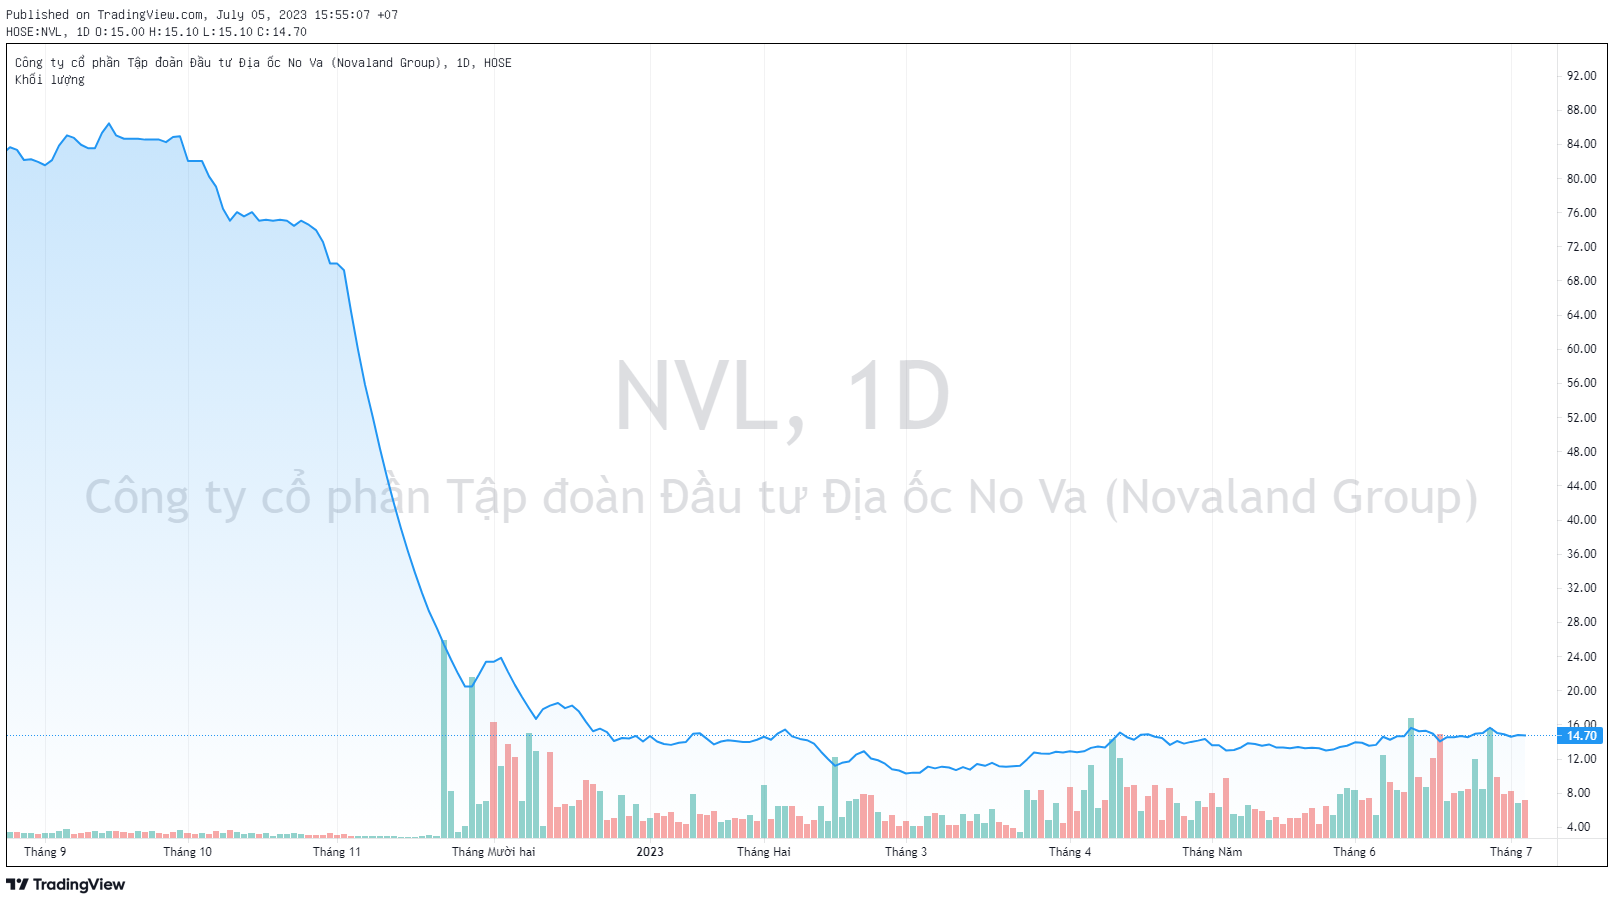 Con gái Chủ tịch Novaland Bùi Thành Nhơn mua vào hơn 3 triệu cổ phiếu NVL - Ảnh 2.